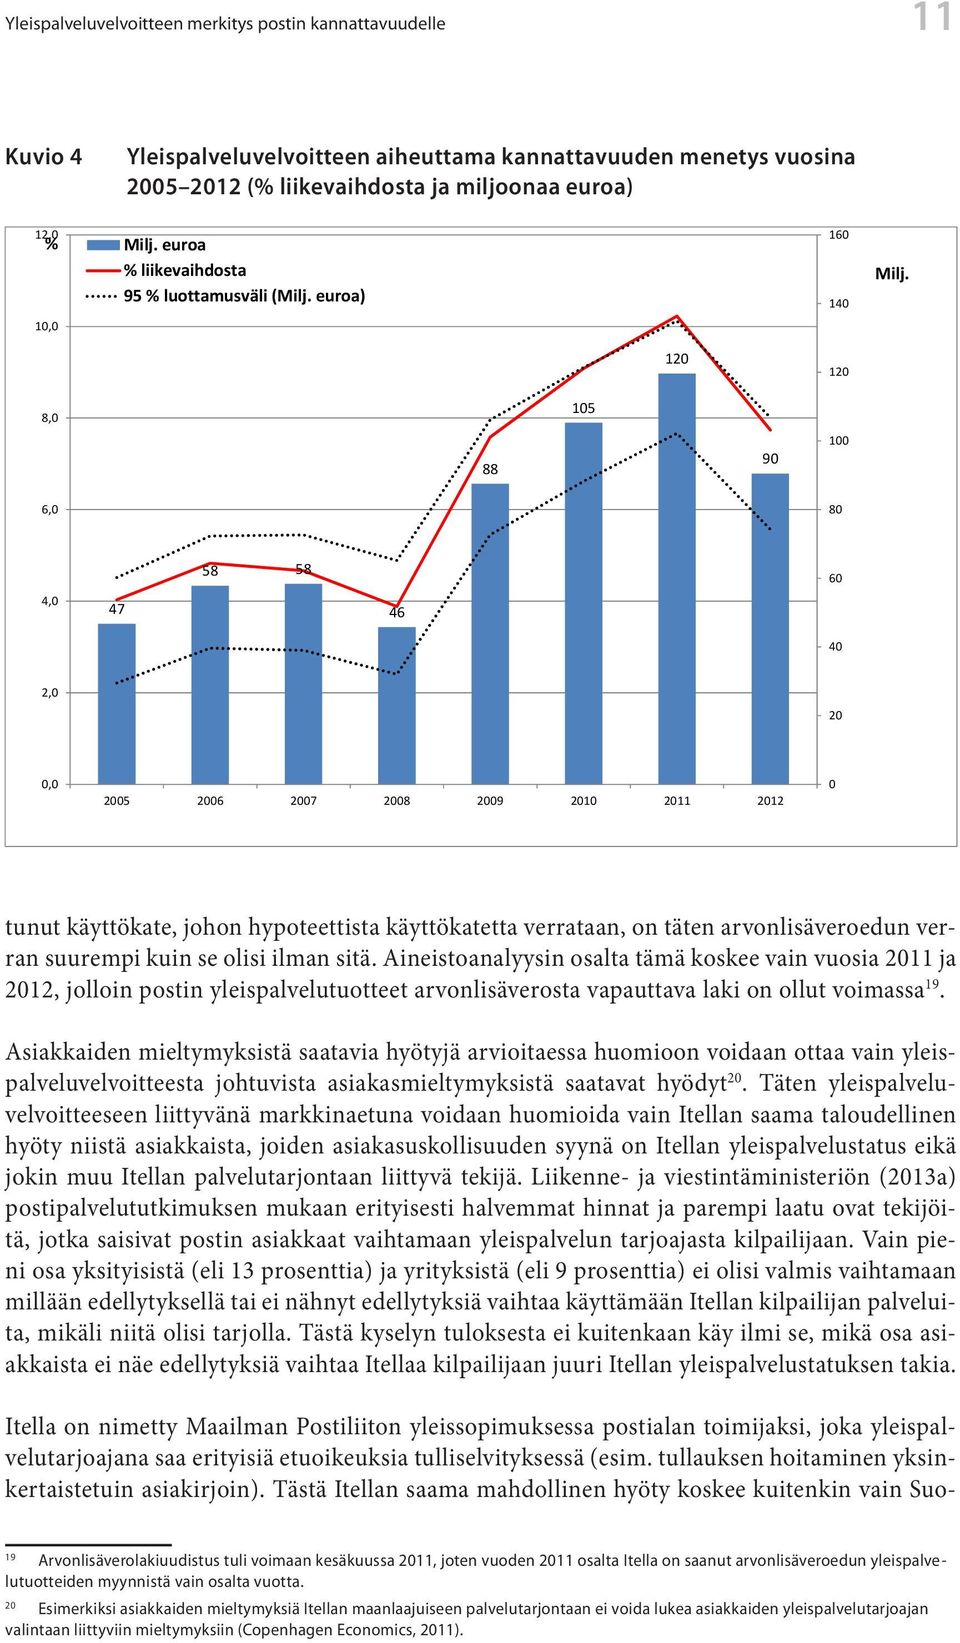 Yleispalveluvelvoitteen aiheuttama aiheuttama kannattavuuden menetys menetys vuosina vuosina 2005-2012 (% liikevaihdosta 2005 2012 ja miljoonaa (% liikevaihdosta euroa) ja miljoonaa euroa) 12,0 %